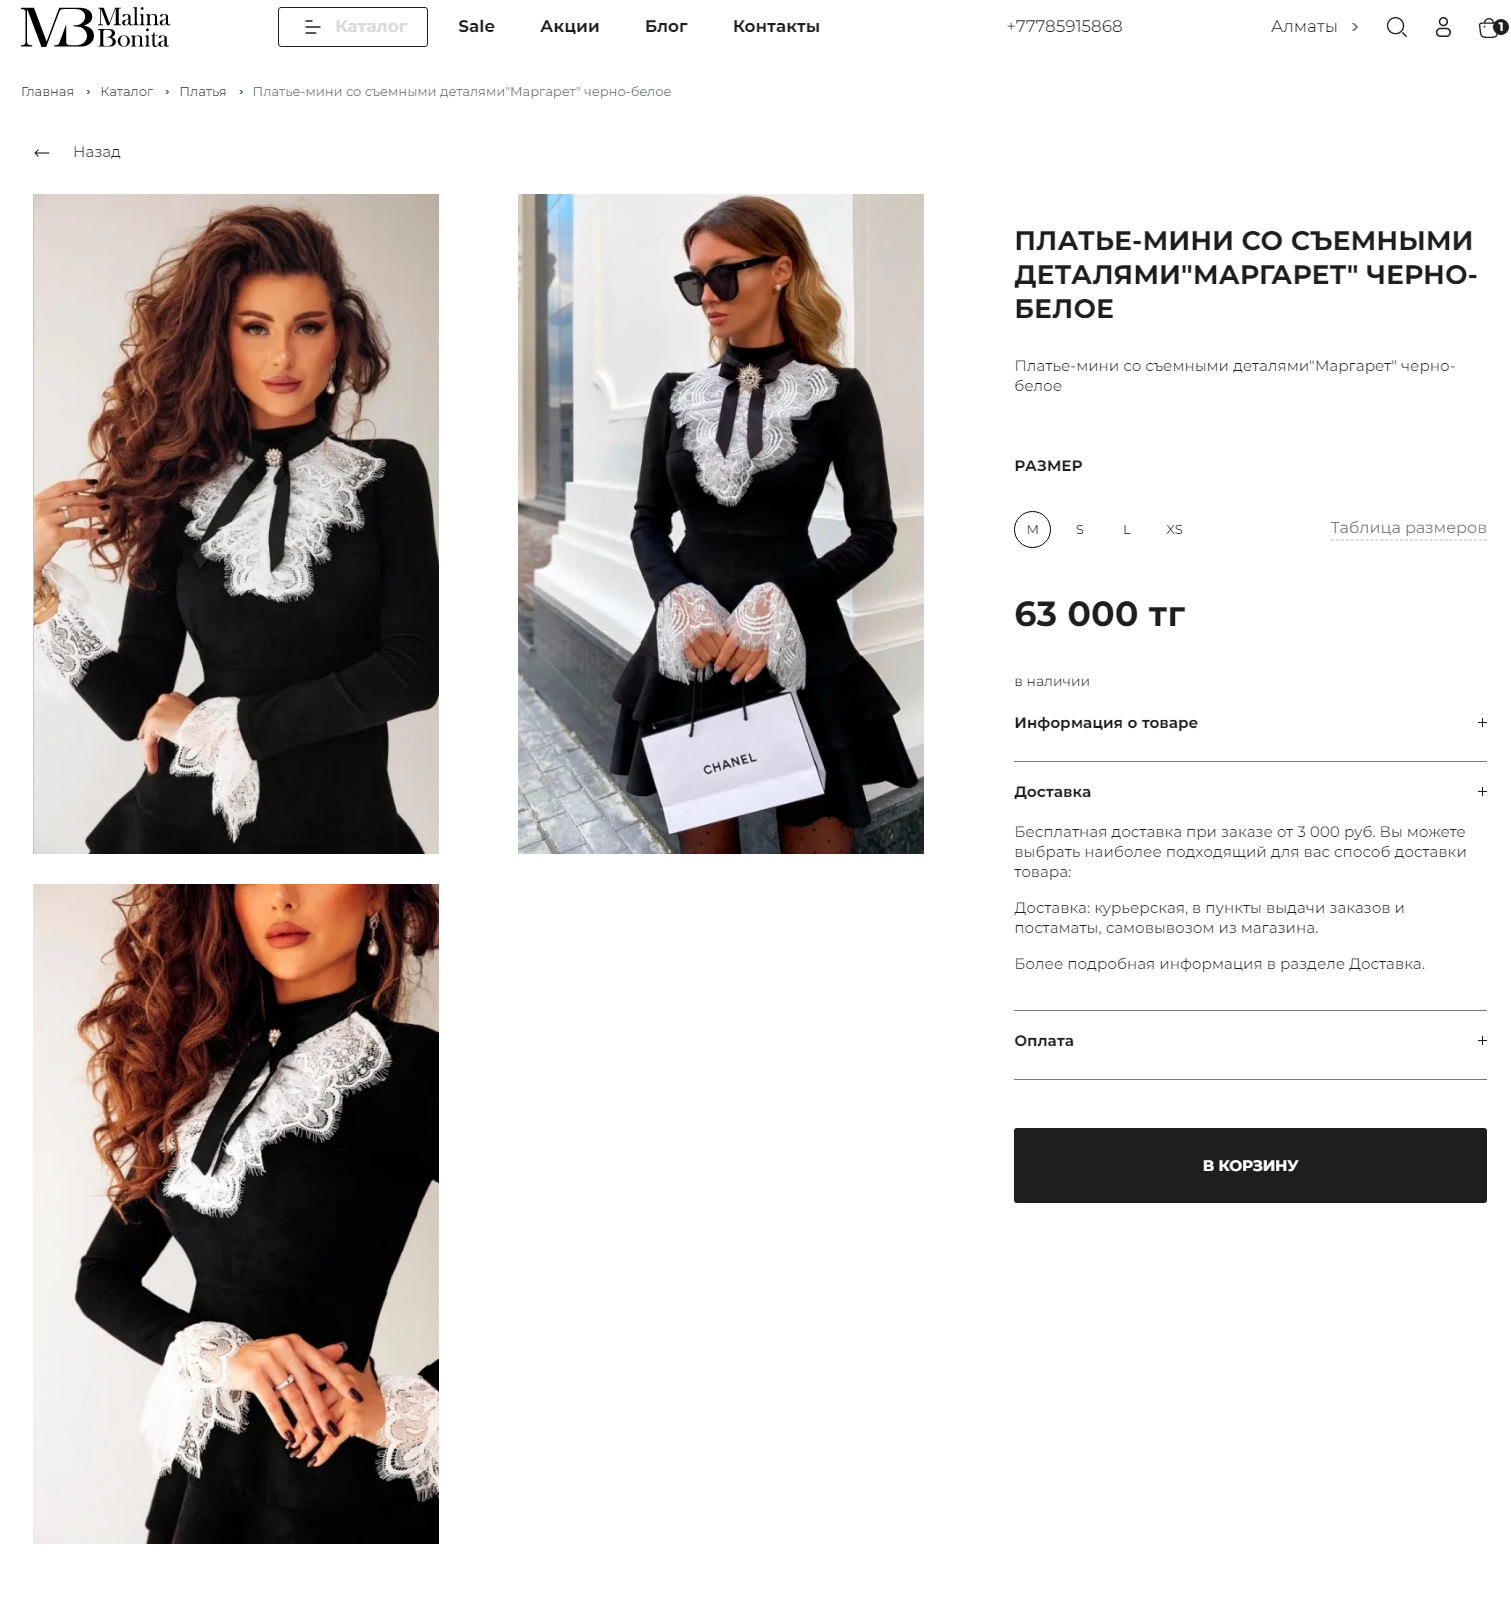 разработка интернет-магазина для бутика модной женской одежды malina bonita